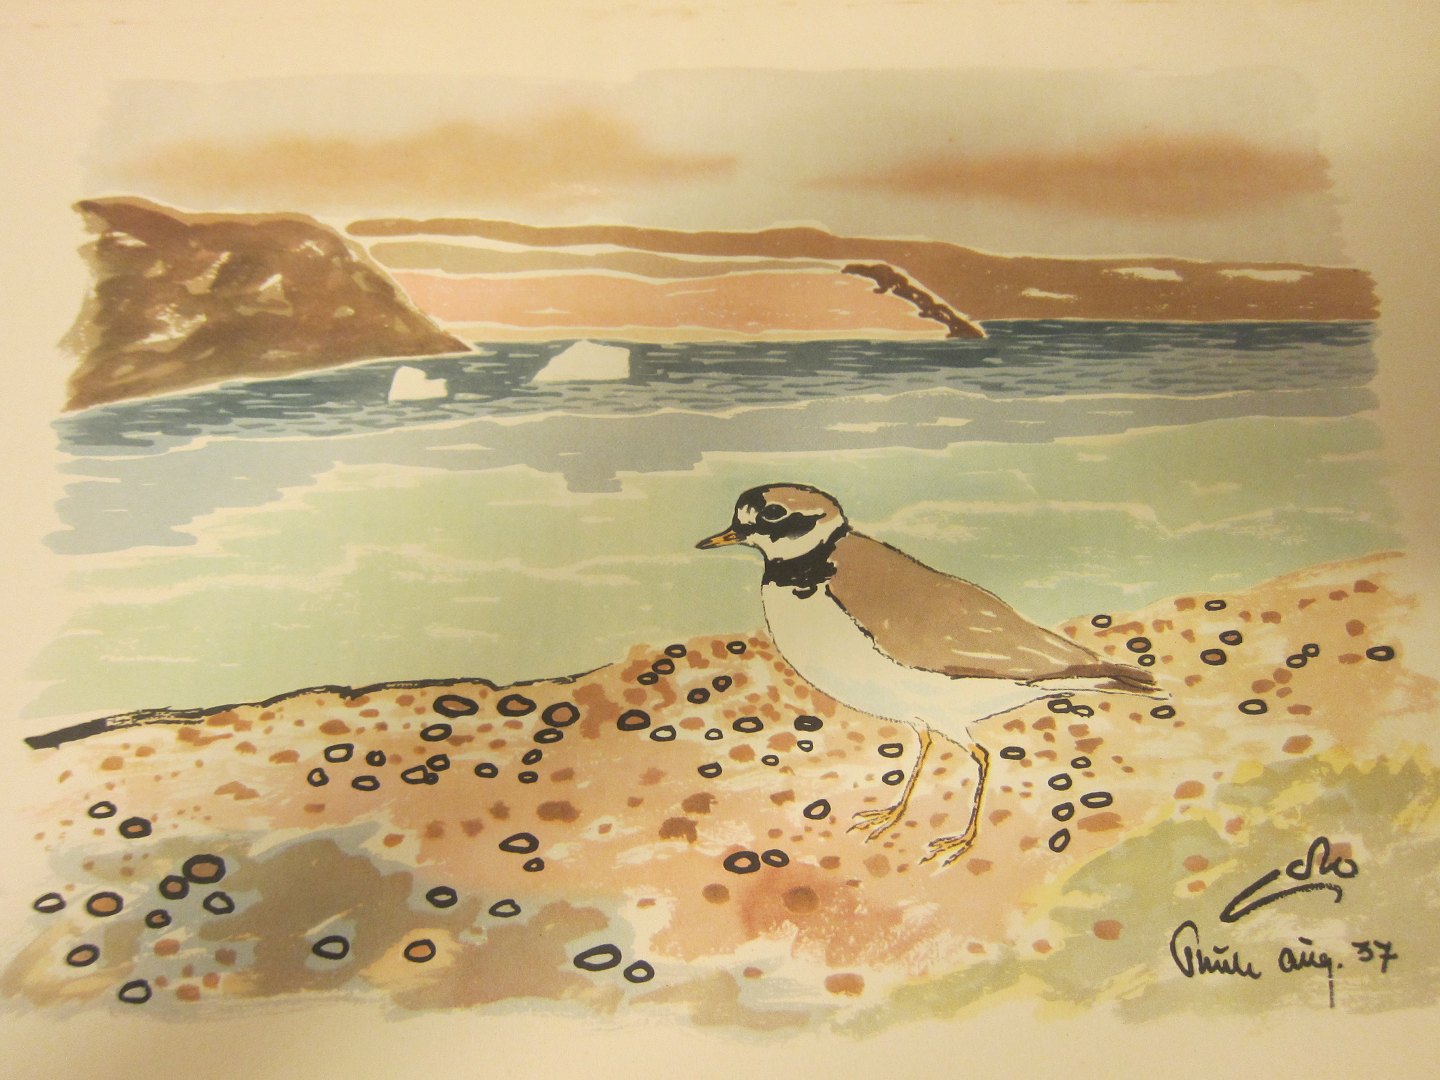 det sidste retfærdig pubertet ViKaLi - Grønlands Fugle, 3 bind * Mange, meget smukke og livagtige  illustrationer af den